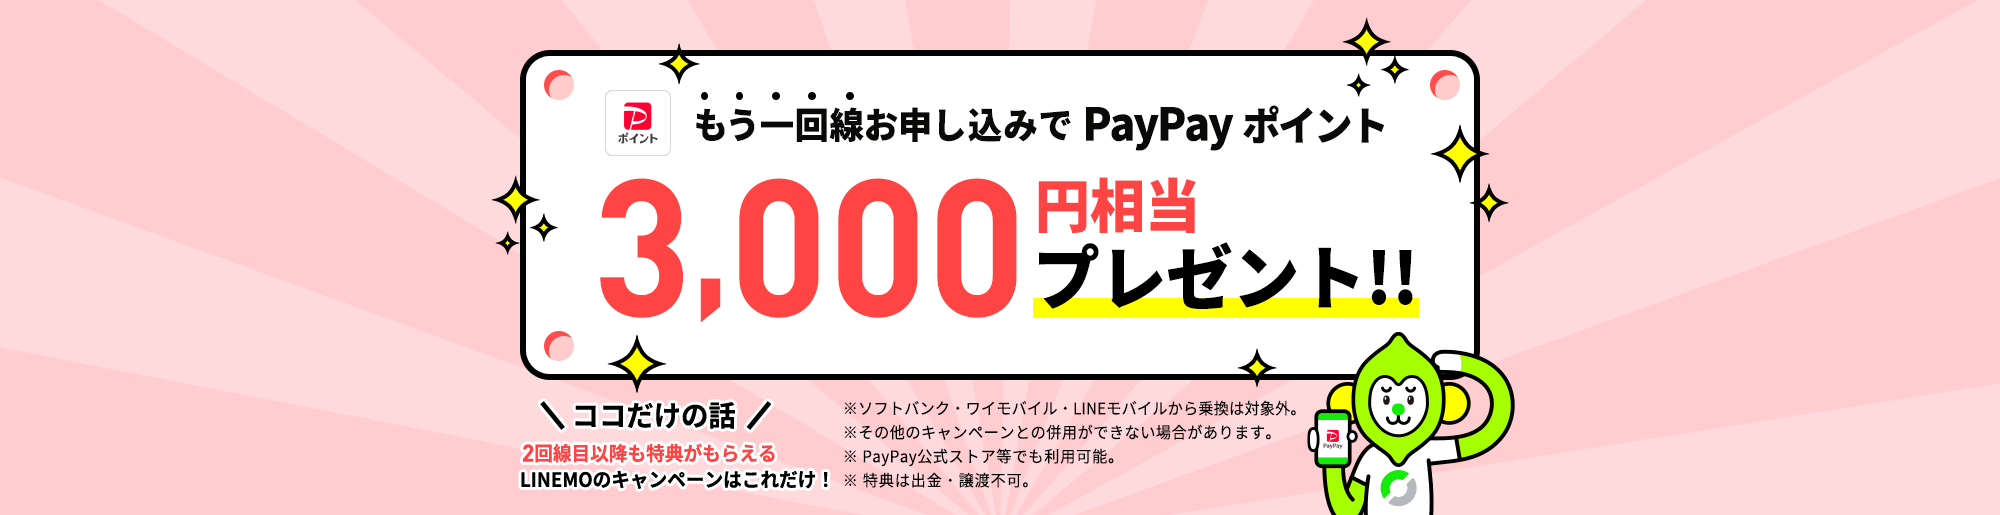 現在LINEMOをご契約のお客様がキャンペーン期間中に、当ページを経由して、LINEMO2回線目以降を他社からの乗り換え・新しい番号で契約なら、PayPayポイントを3,000円相当プレゼントします。